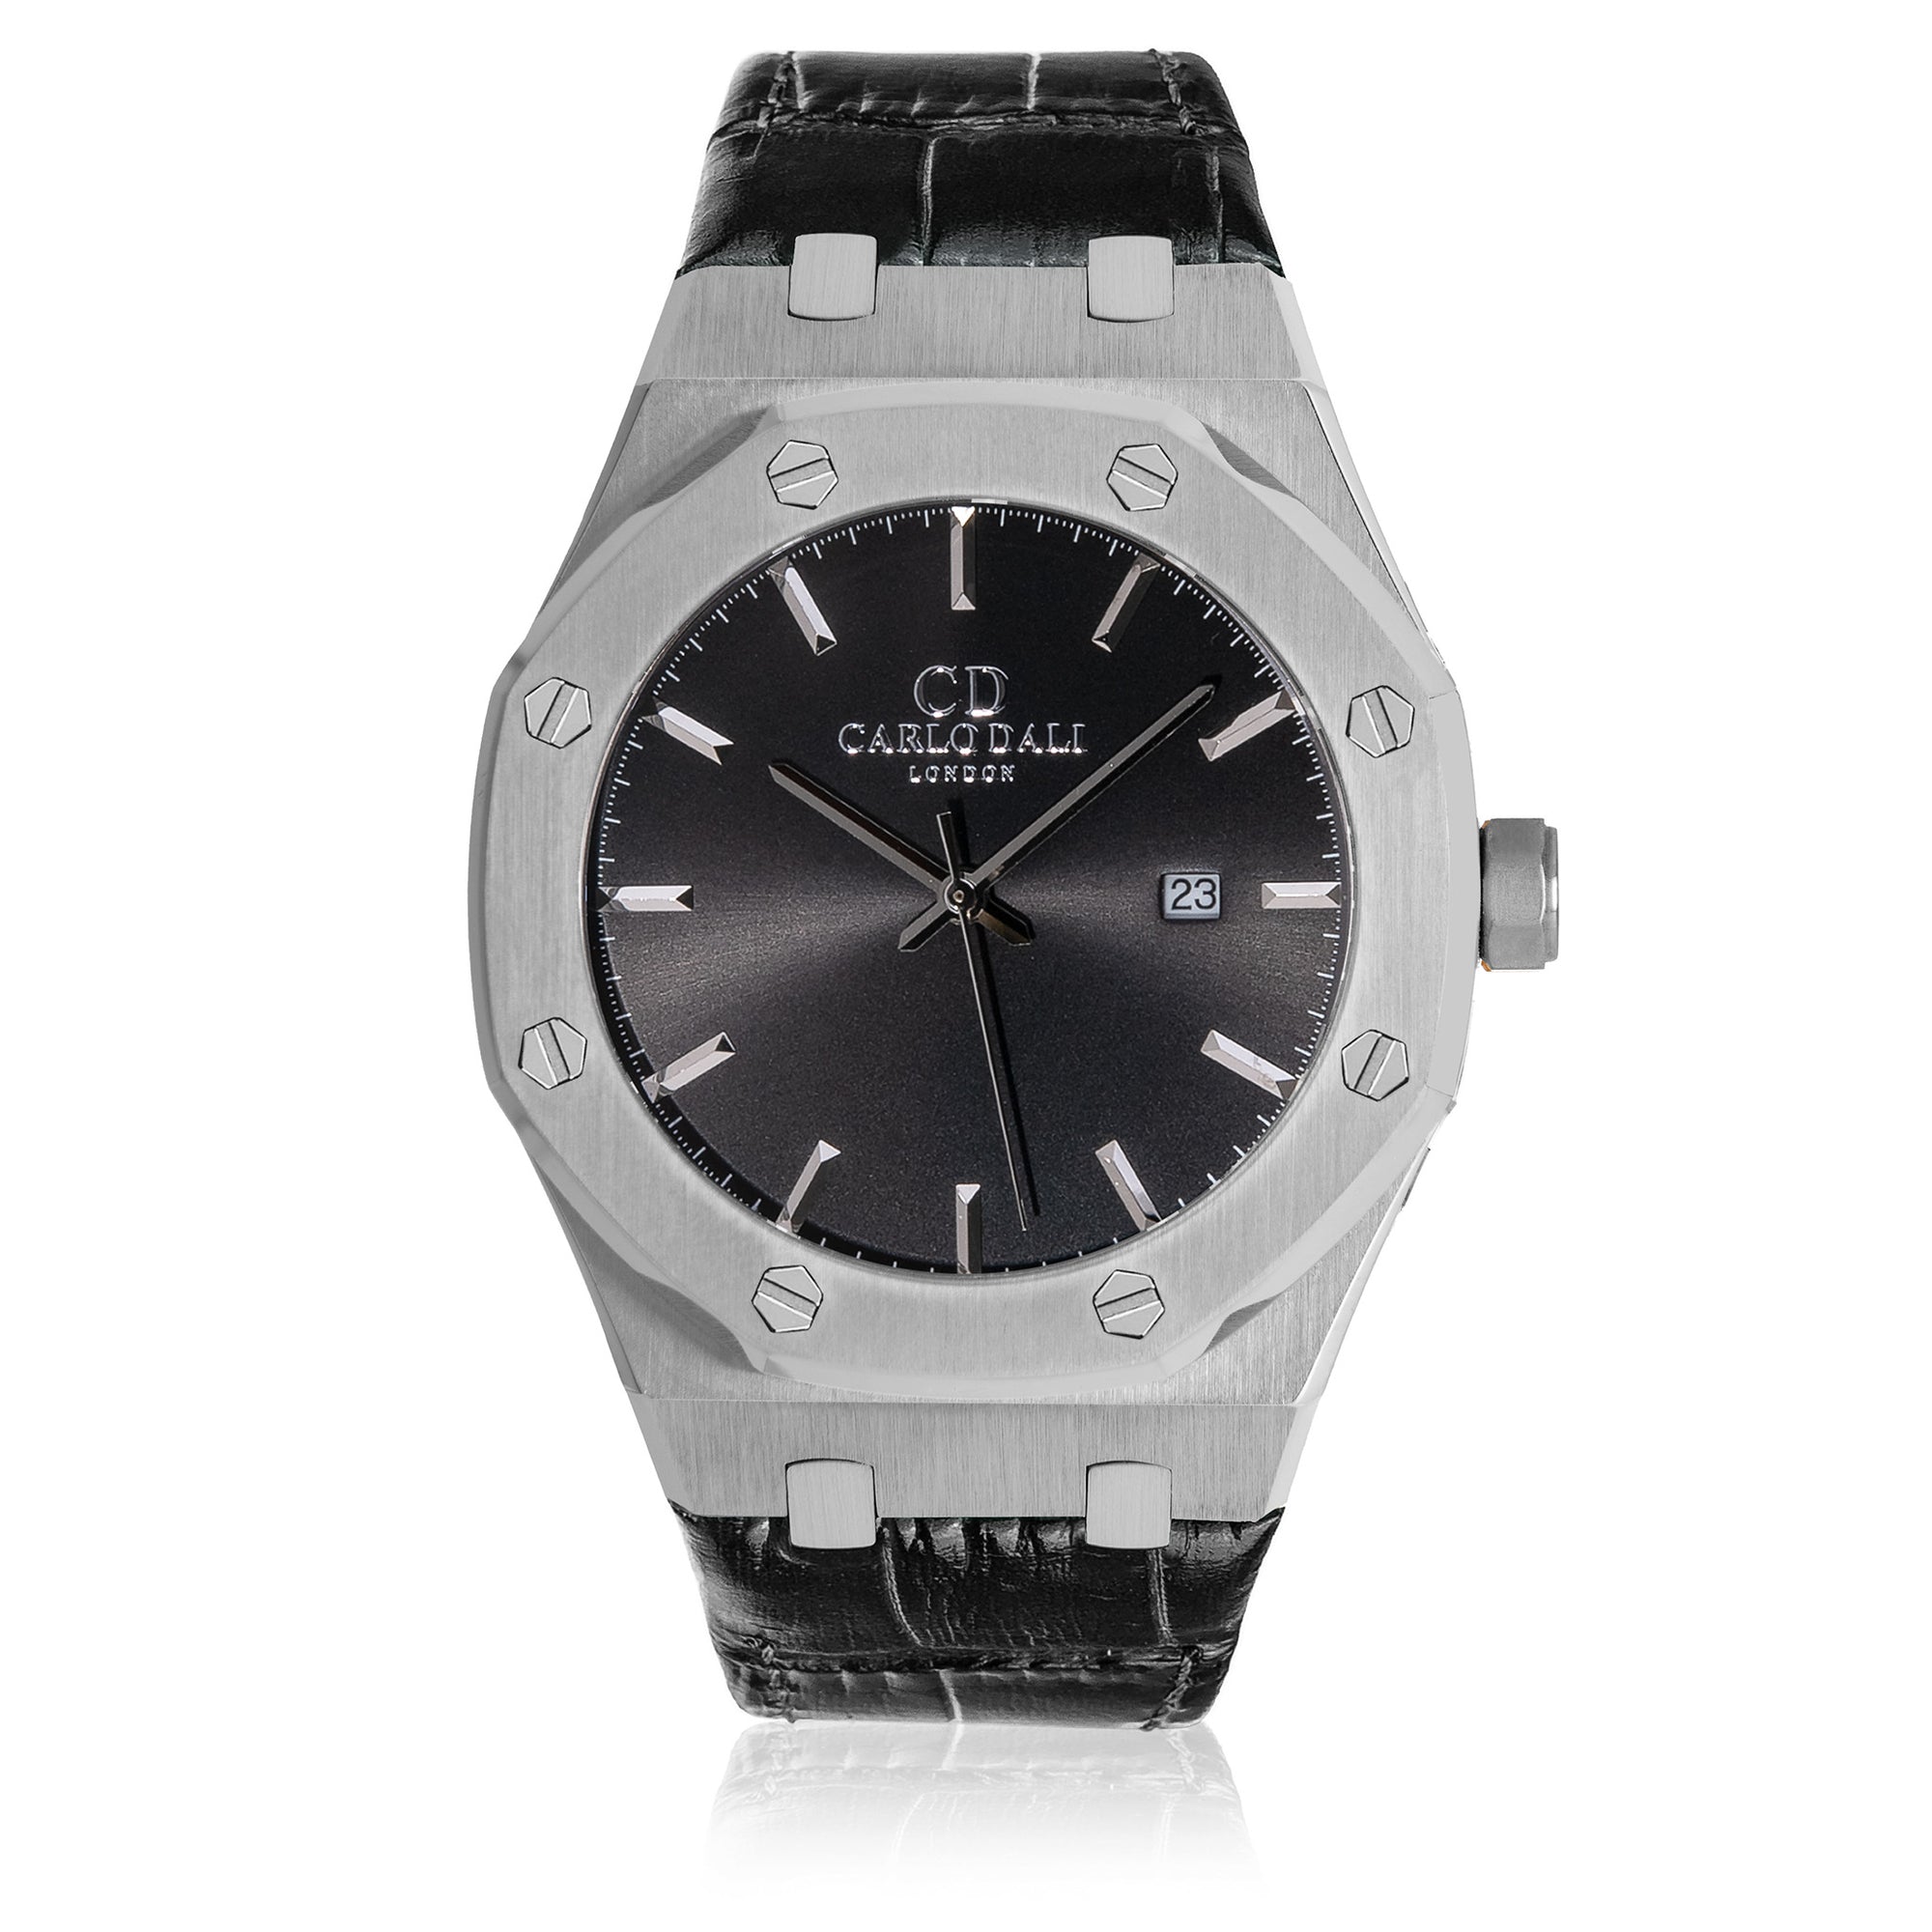 CARLO DALI Classic Fusion Black Leather Strap watch